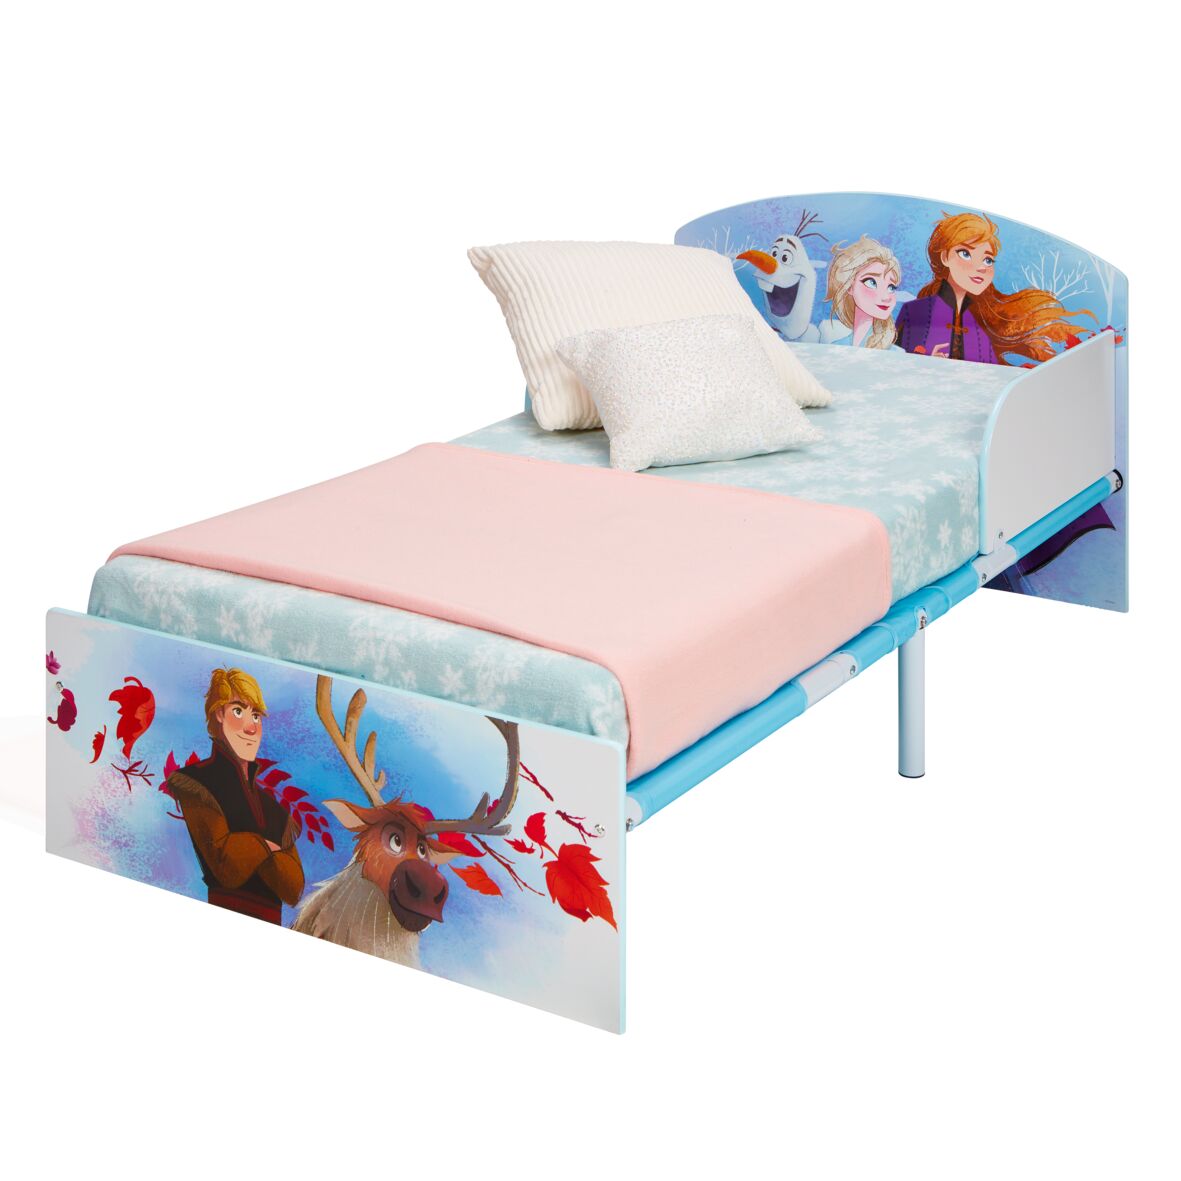 Billede af Disney Frost 2 Junior seng (140cm) hos MM Action